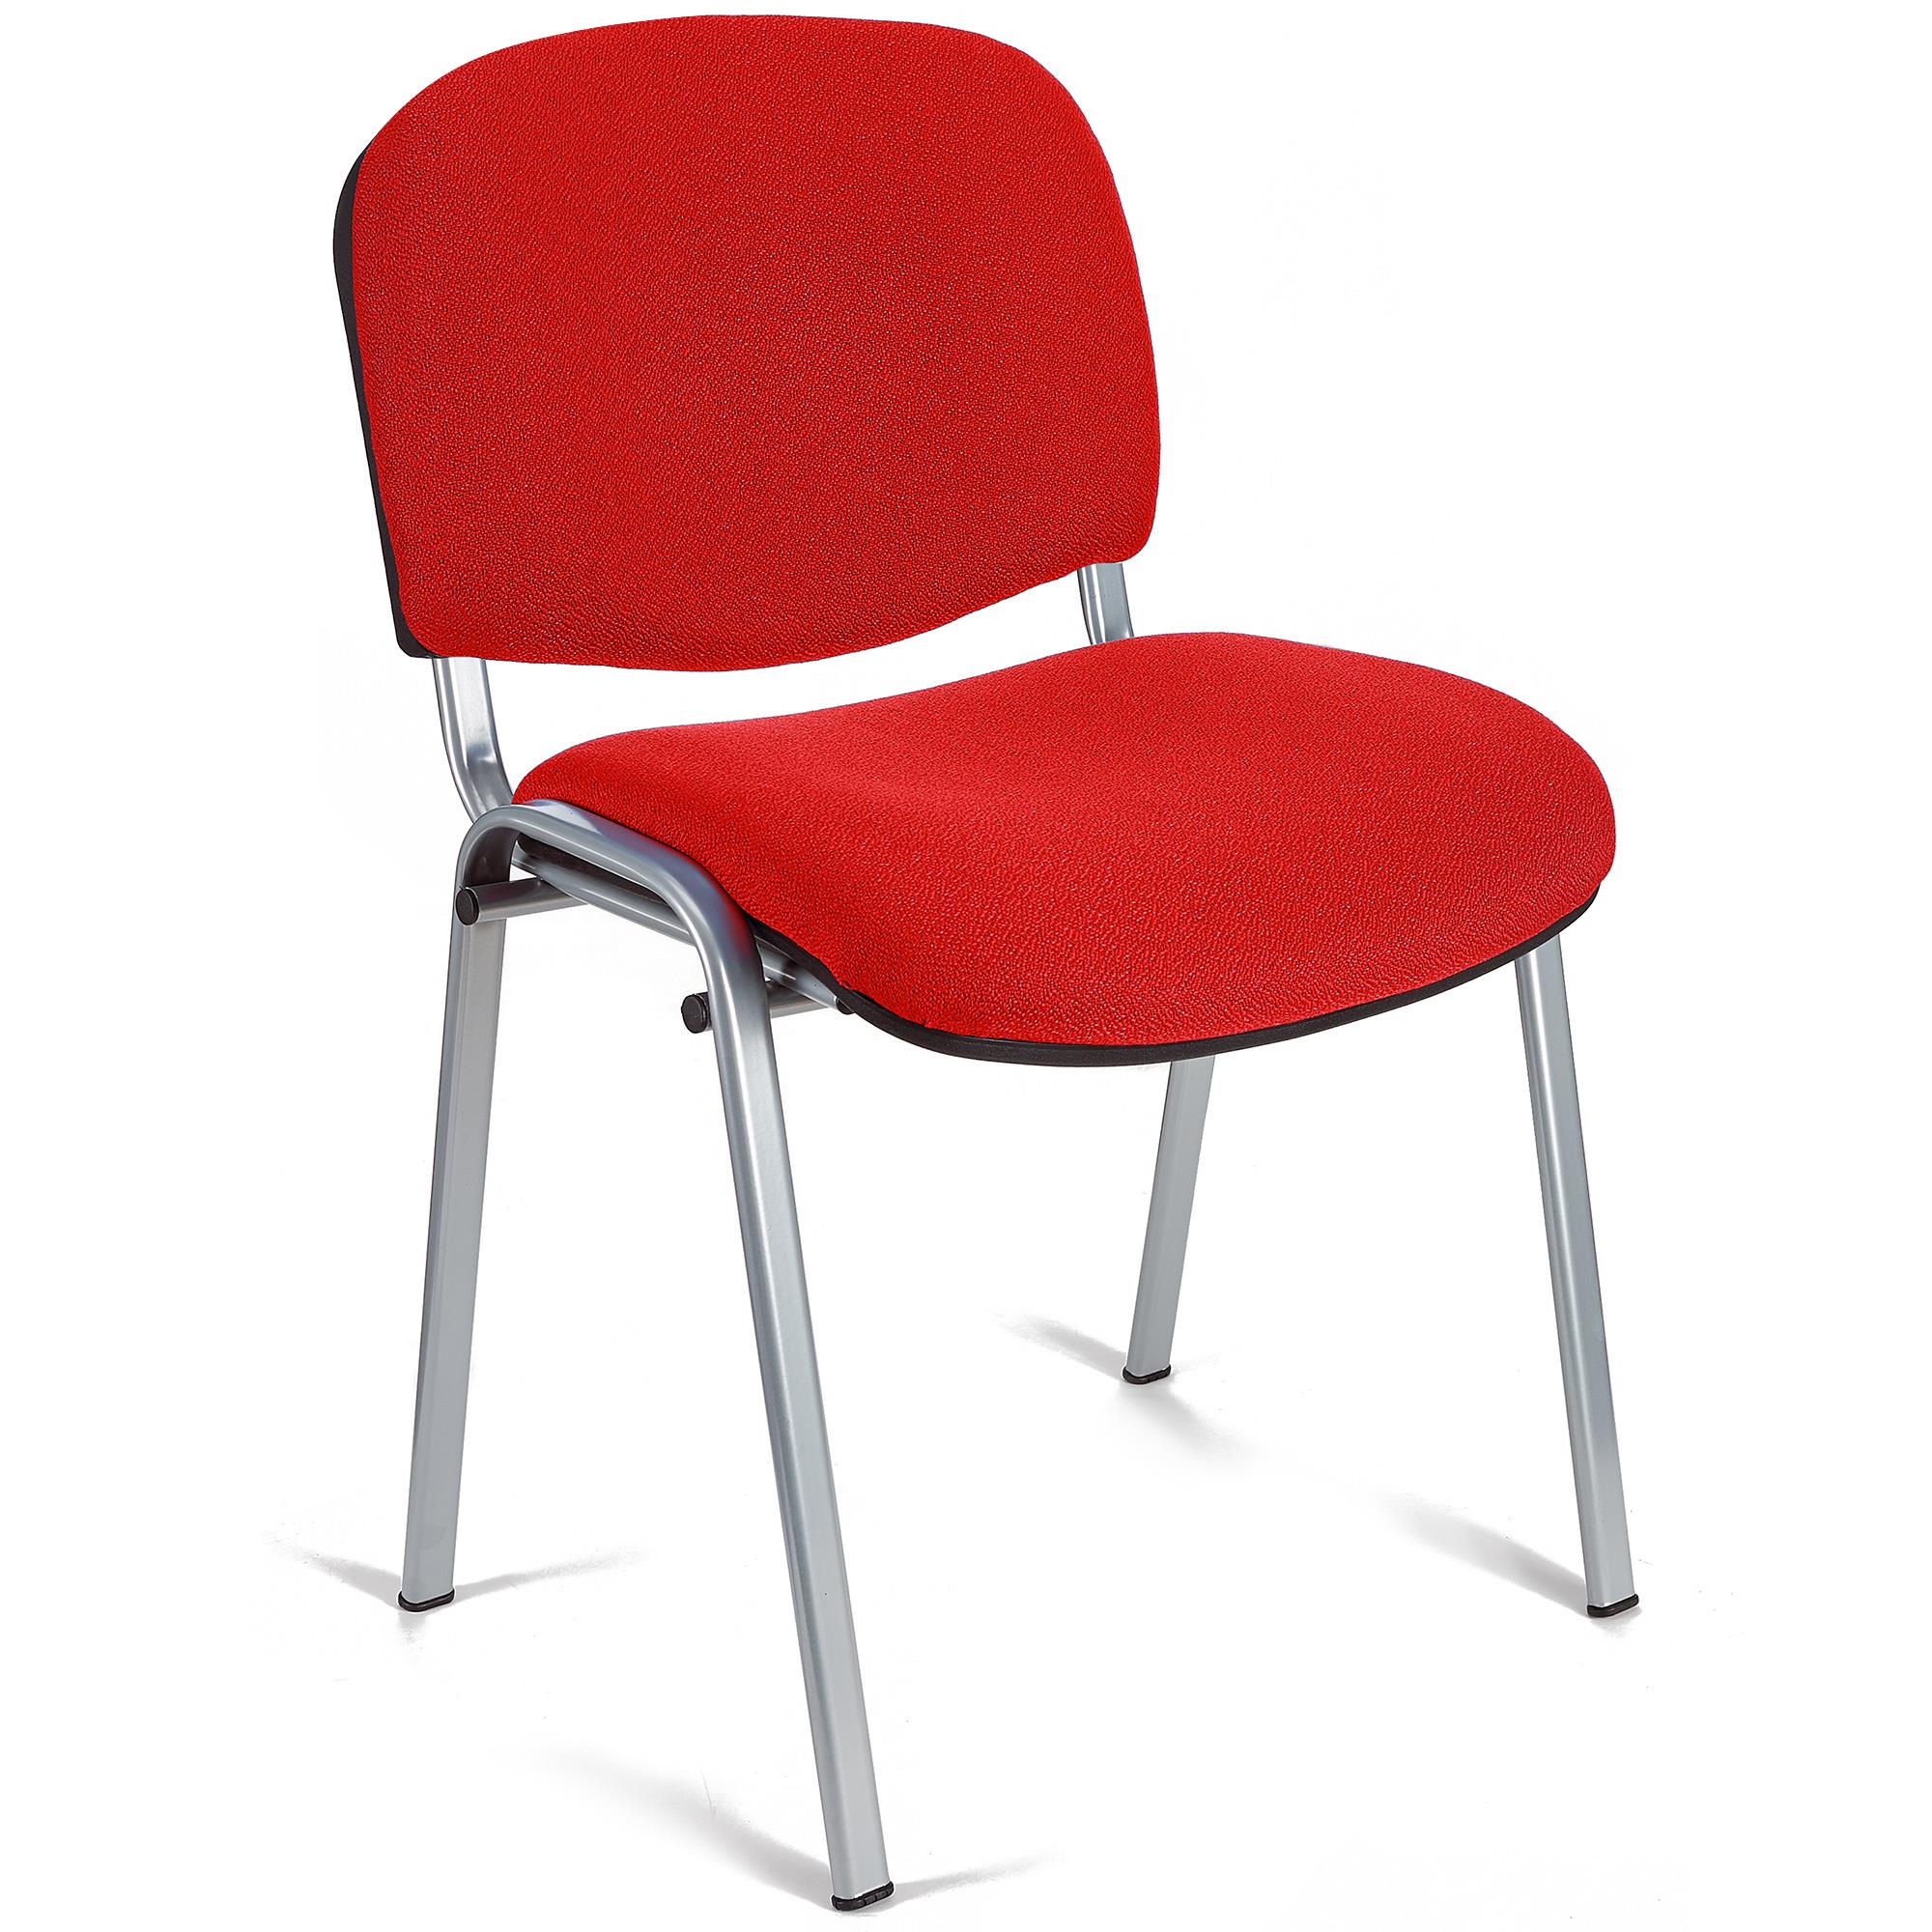 Konferenzstuhl MOBY BASE mit grauen Stuhlbeinen, bequem und praktisch, stapelbar, Farbe Rot